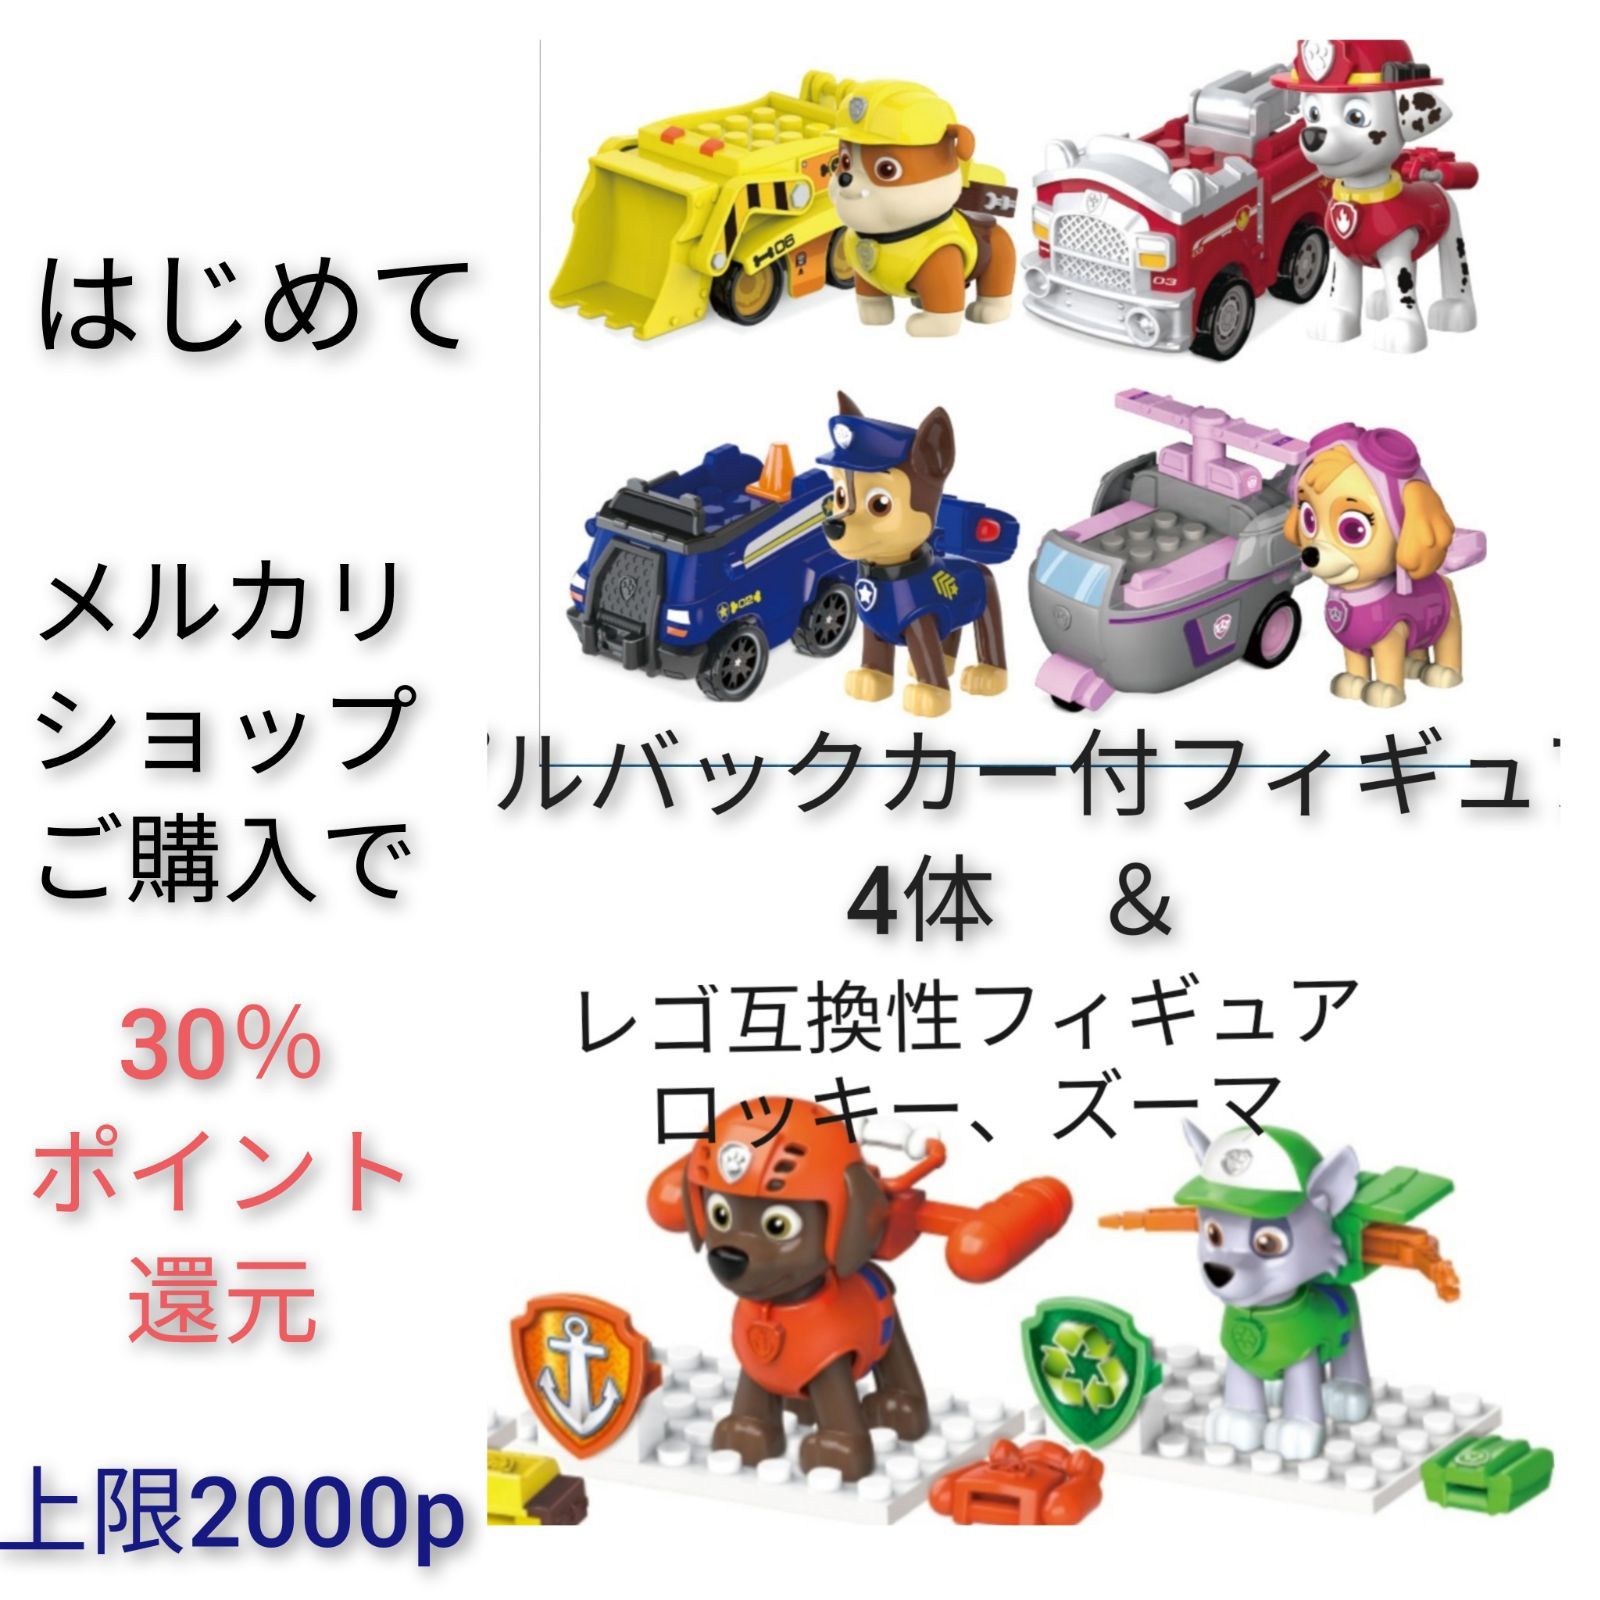 パウパトロール レゴ互換プルバックカー&フィギュアセット 人形 6体